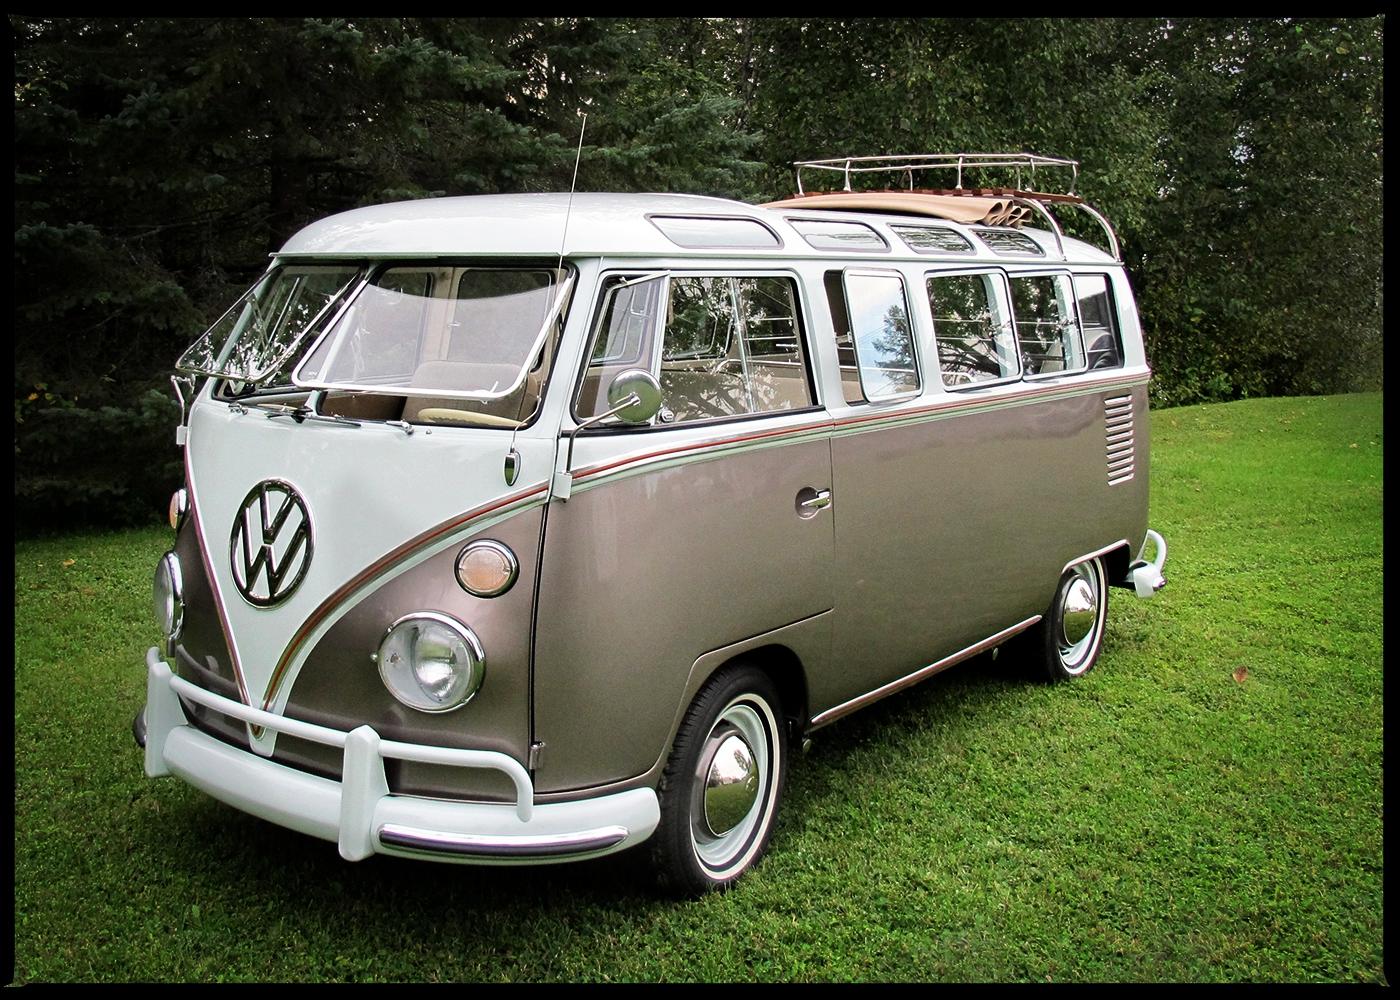 1964 Volkswagen Type 2 21-Window Deluxe Microbus, volkswagen, Volkswagen Type 2